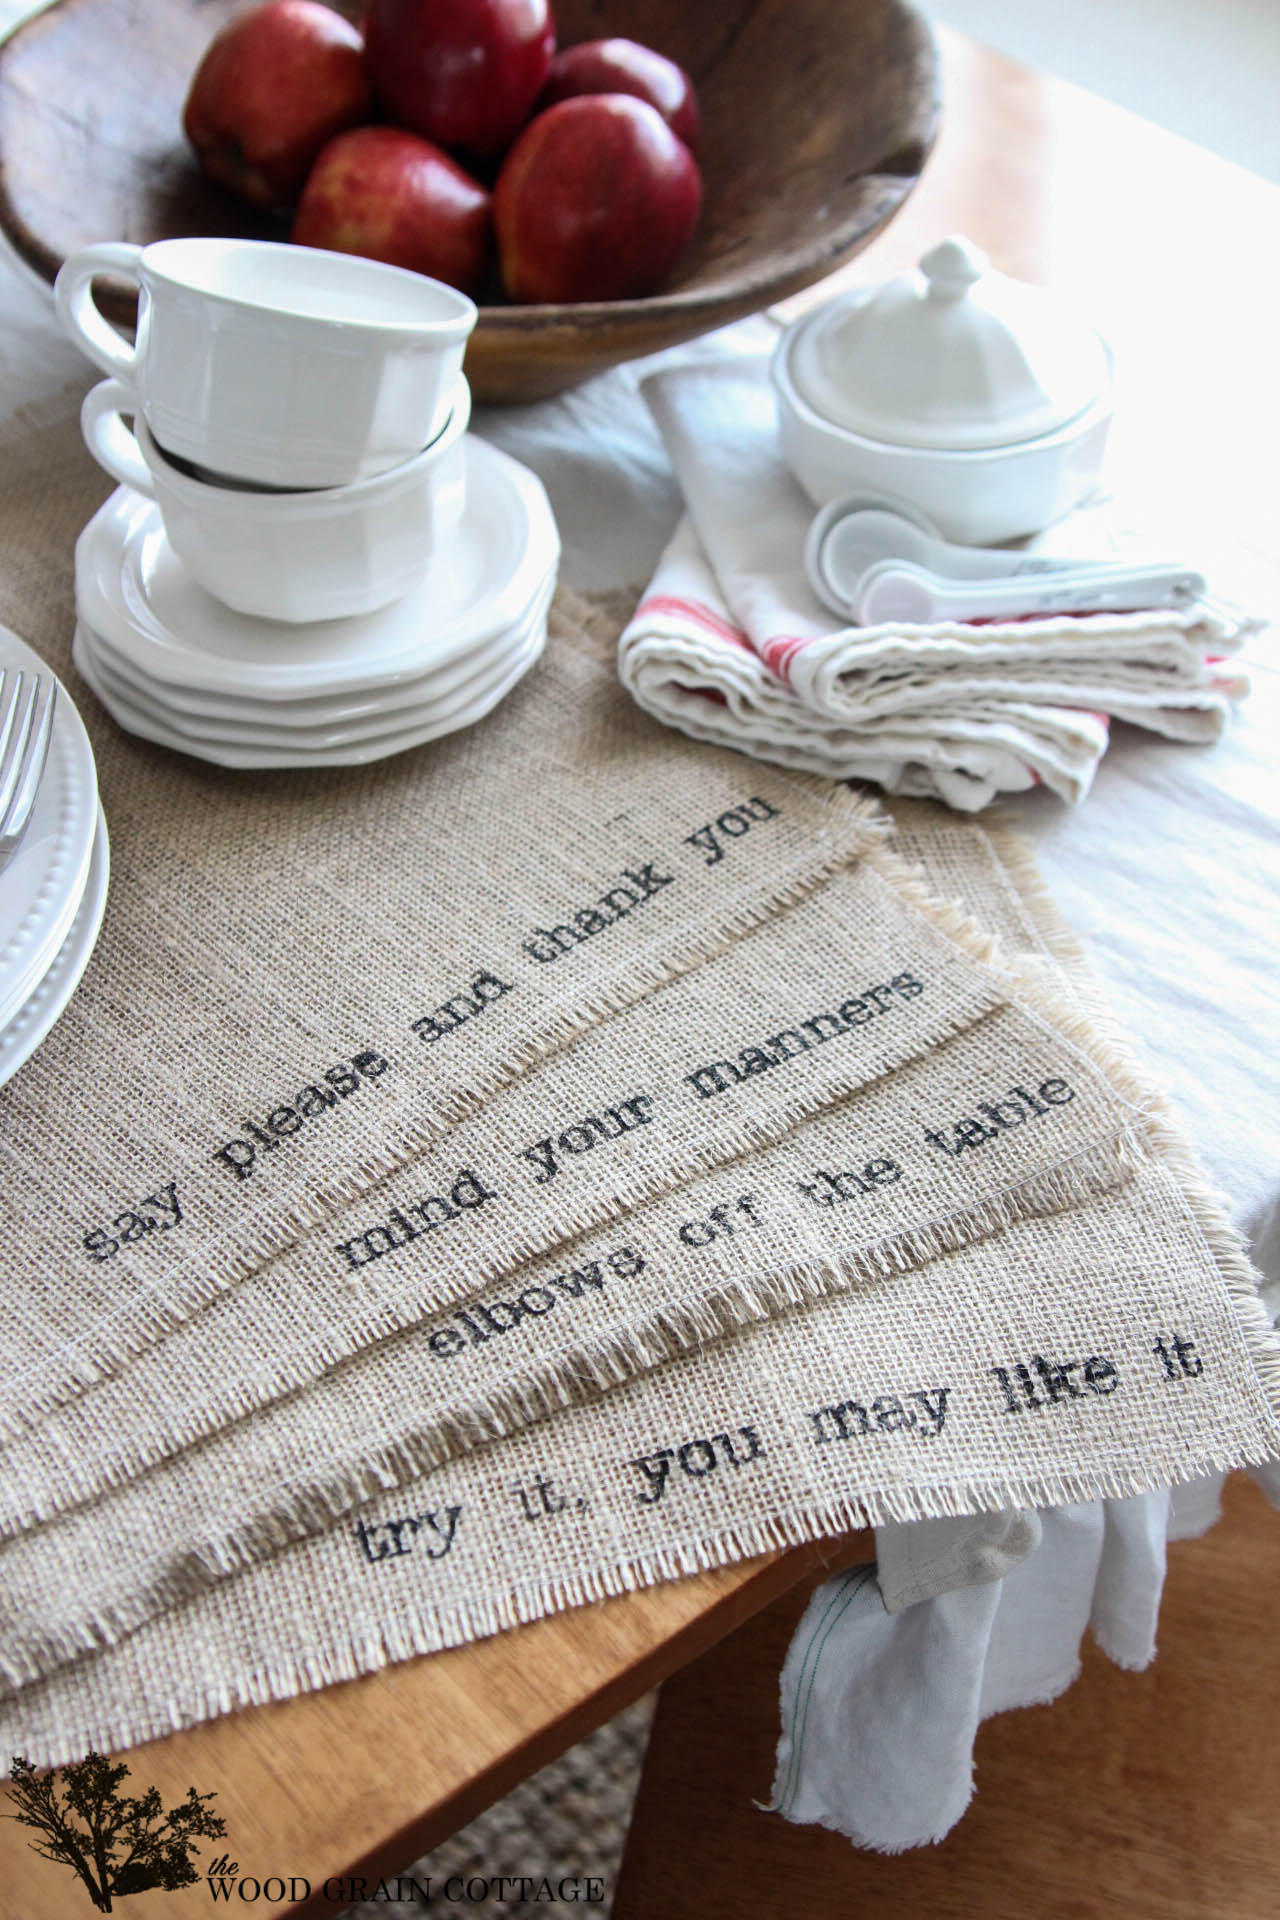 Sáng tạo hơn nữa trong các bữa ăn gia đình hoặc các bữa tiệc nhiều thành viên đó chính là in những thông điệp đơn giản nhưng ý nghĩa lên tấm lót đĩa ăn bằng vải gai.